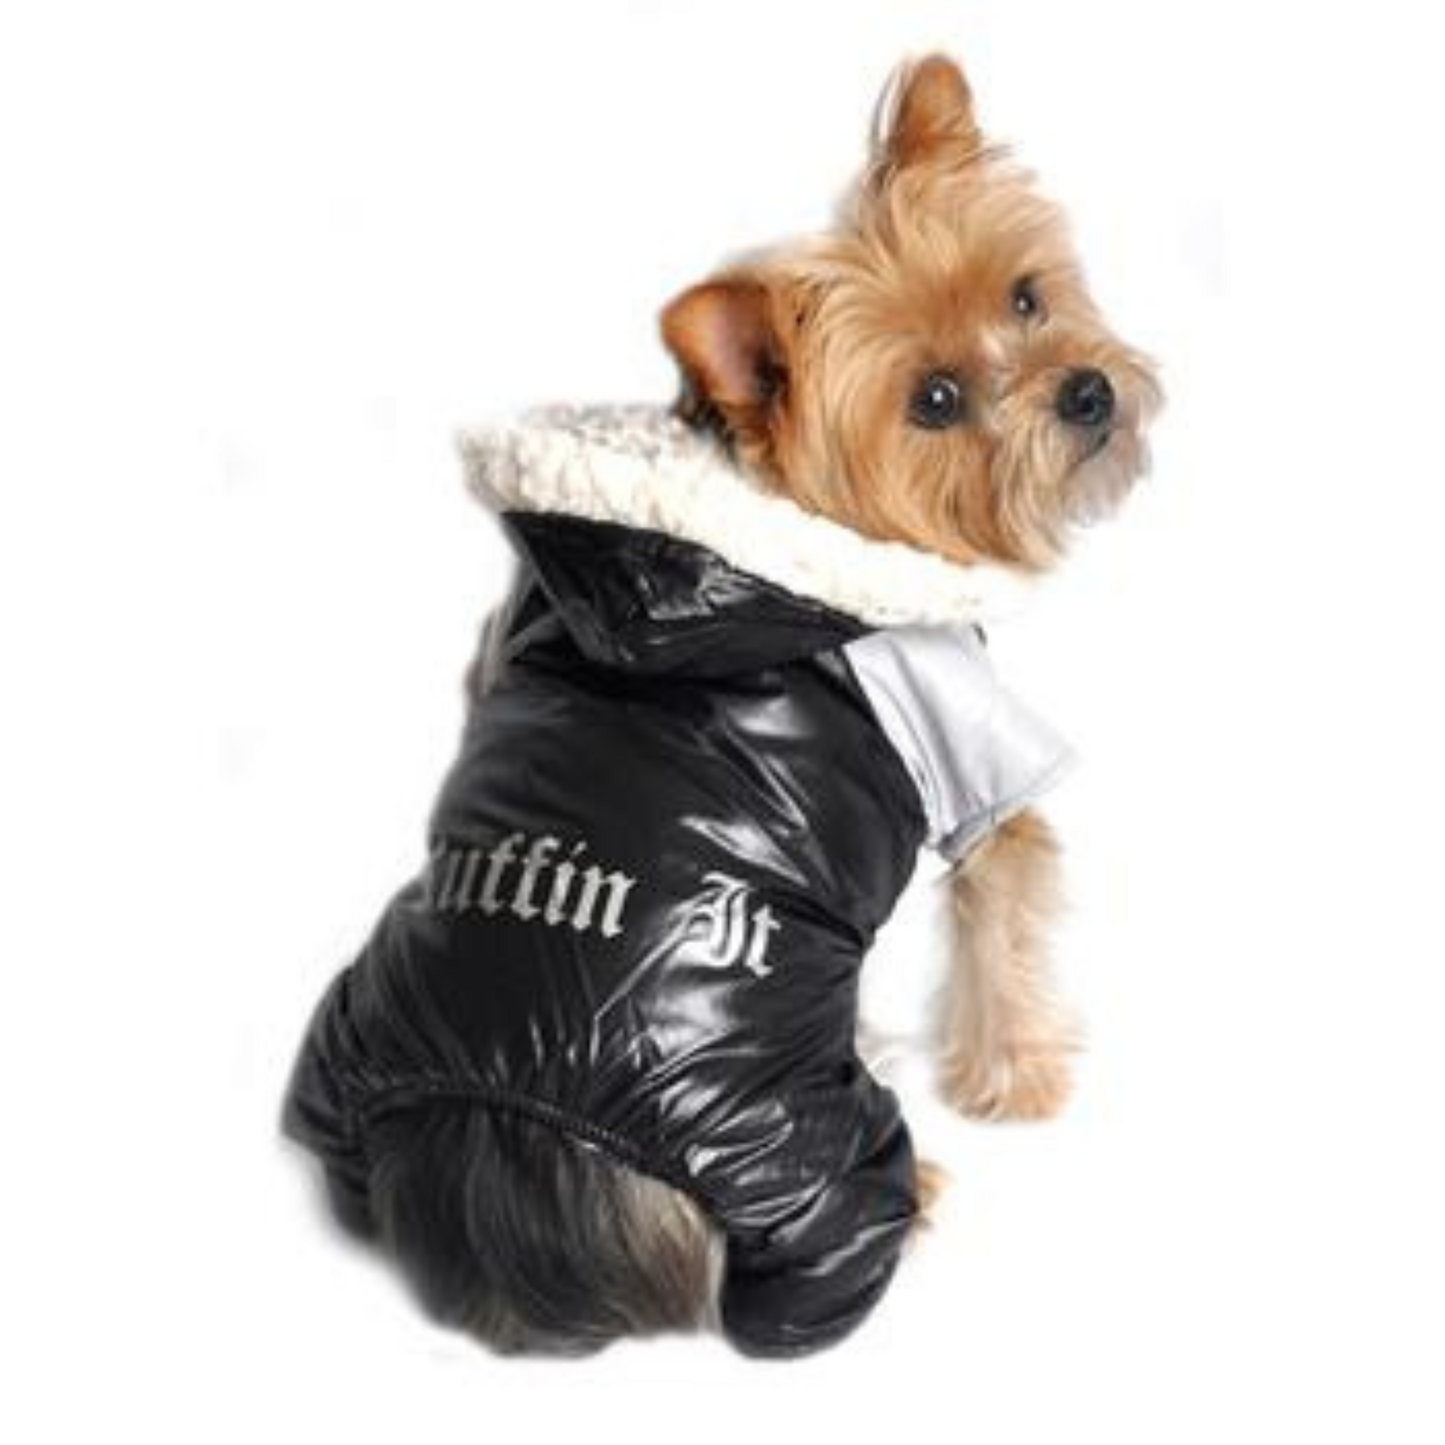 Doggie Design "Ruffin It" Winter Full Dog Snowsuit, Black and Gray, Small